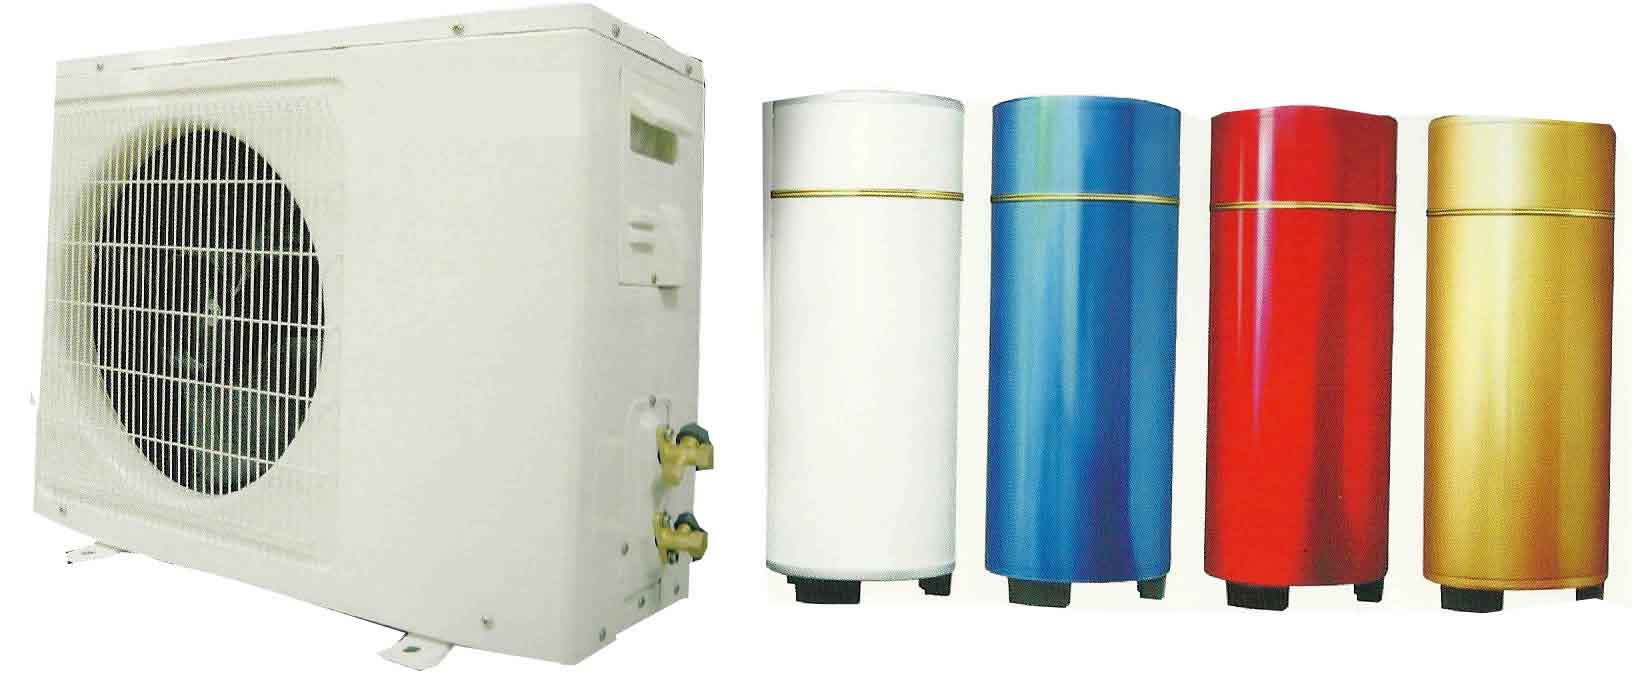 水循环式空气能热水器